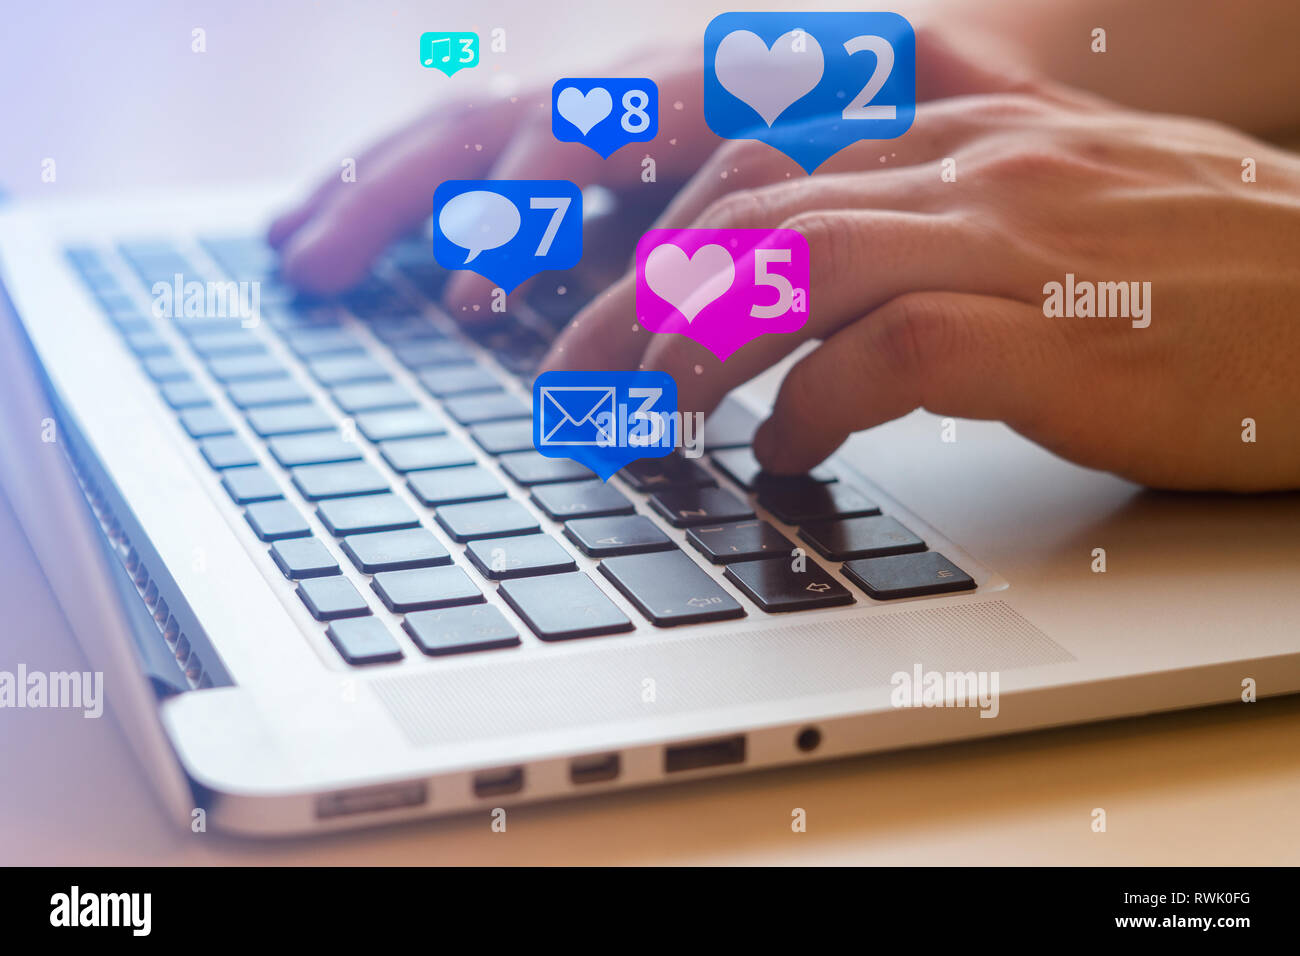 Der Mensch ist mit Laptop mit schwarzen Tasten, Social Media und Social Networking. Marketing Konzept Stockfoto